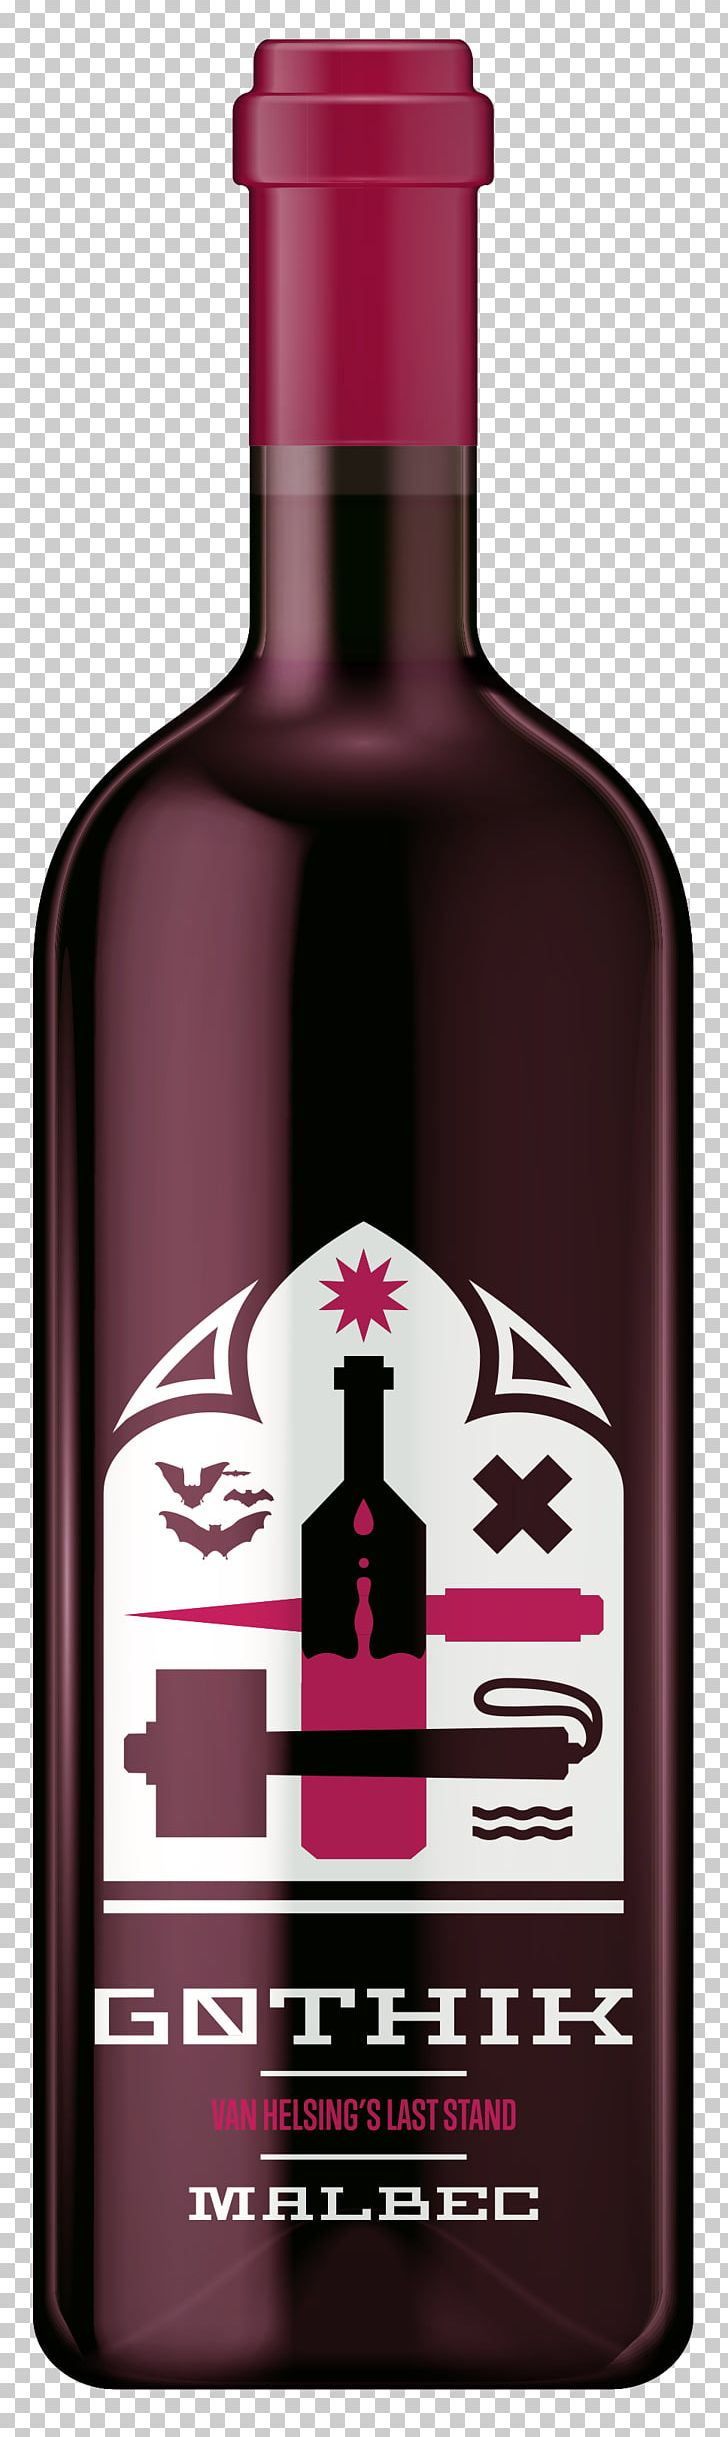 Wine Liqueur Brand And Design PNG, Clipart, Art, Bottle, Brand And Design, Distilled Beverage, Food Drinks Free PNG Download